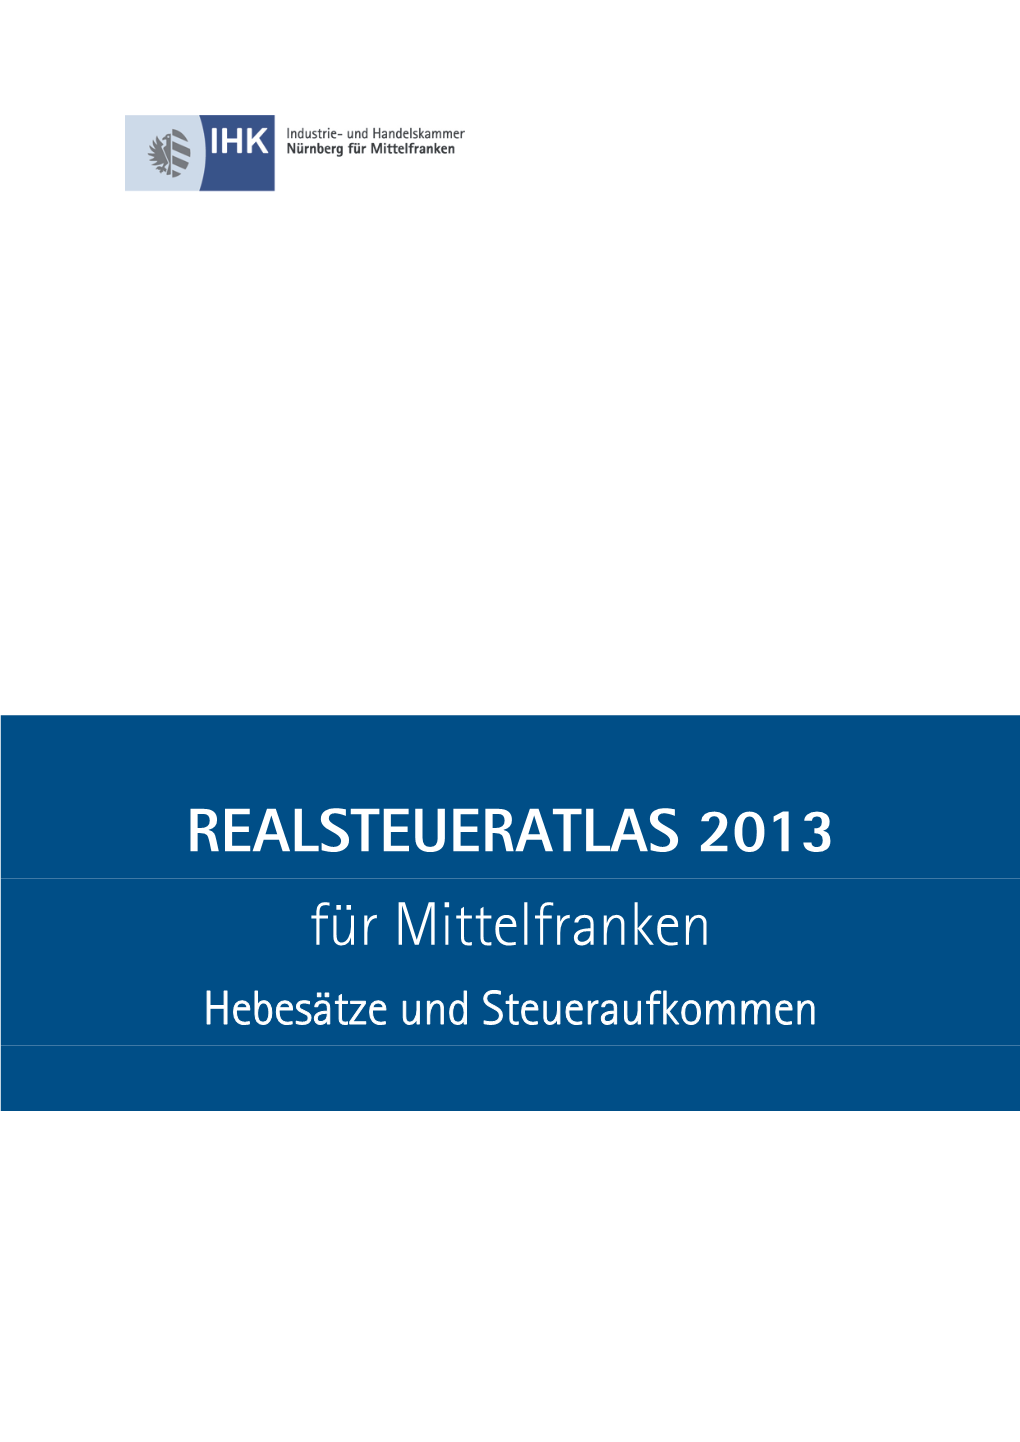 REALSTEUERATLAS 2013 Für Mittelfranken Hebesätze Und Steueraufkommen